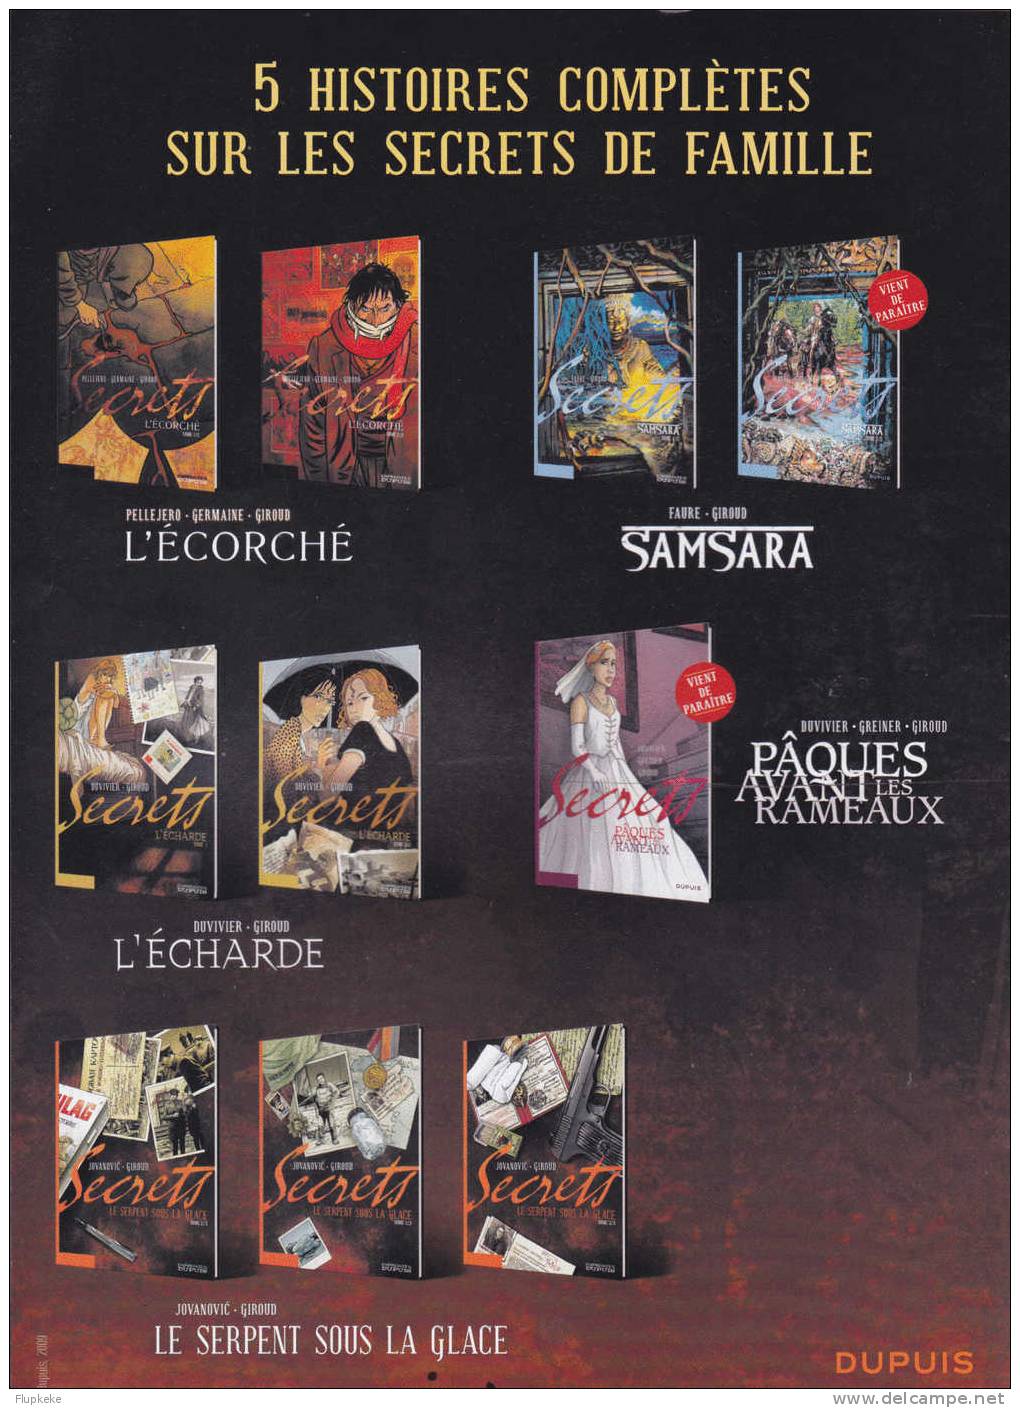 Maquette Promo Secrets 5 Grandes Histoires De Famille Dupuis - Press Books